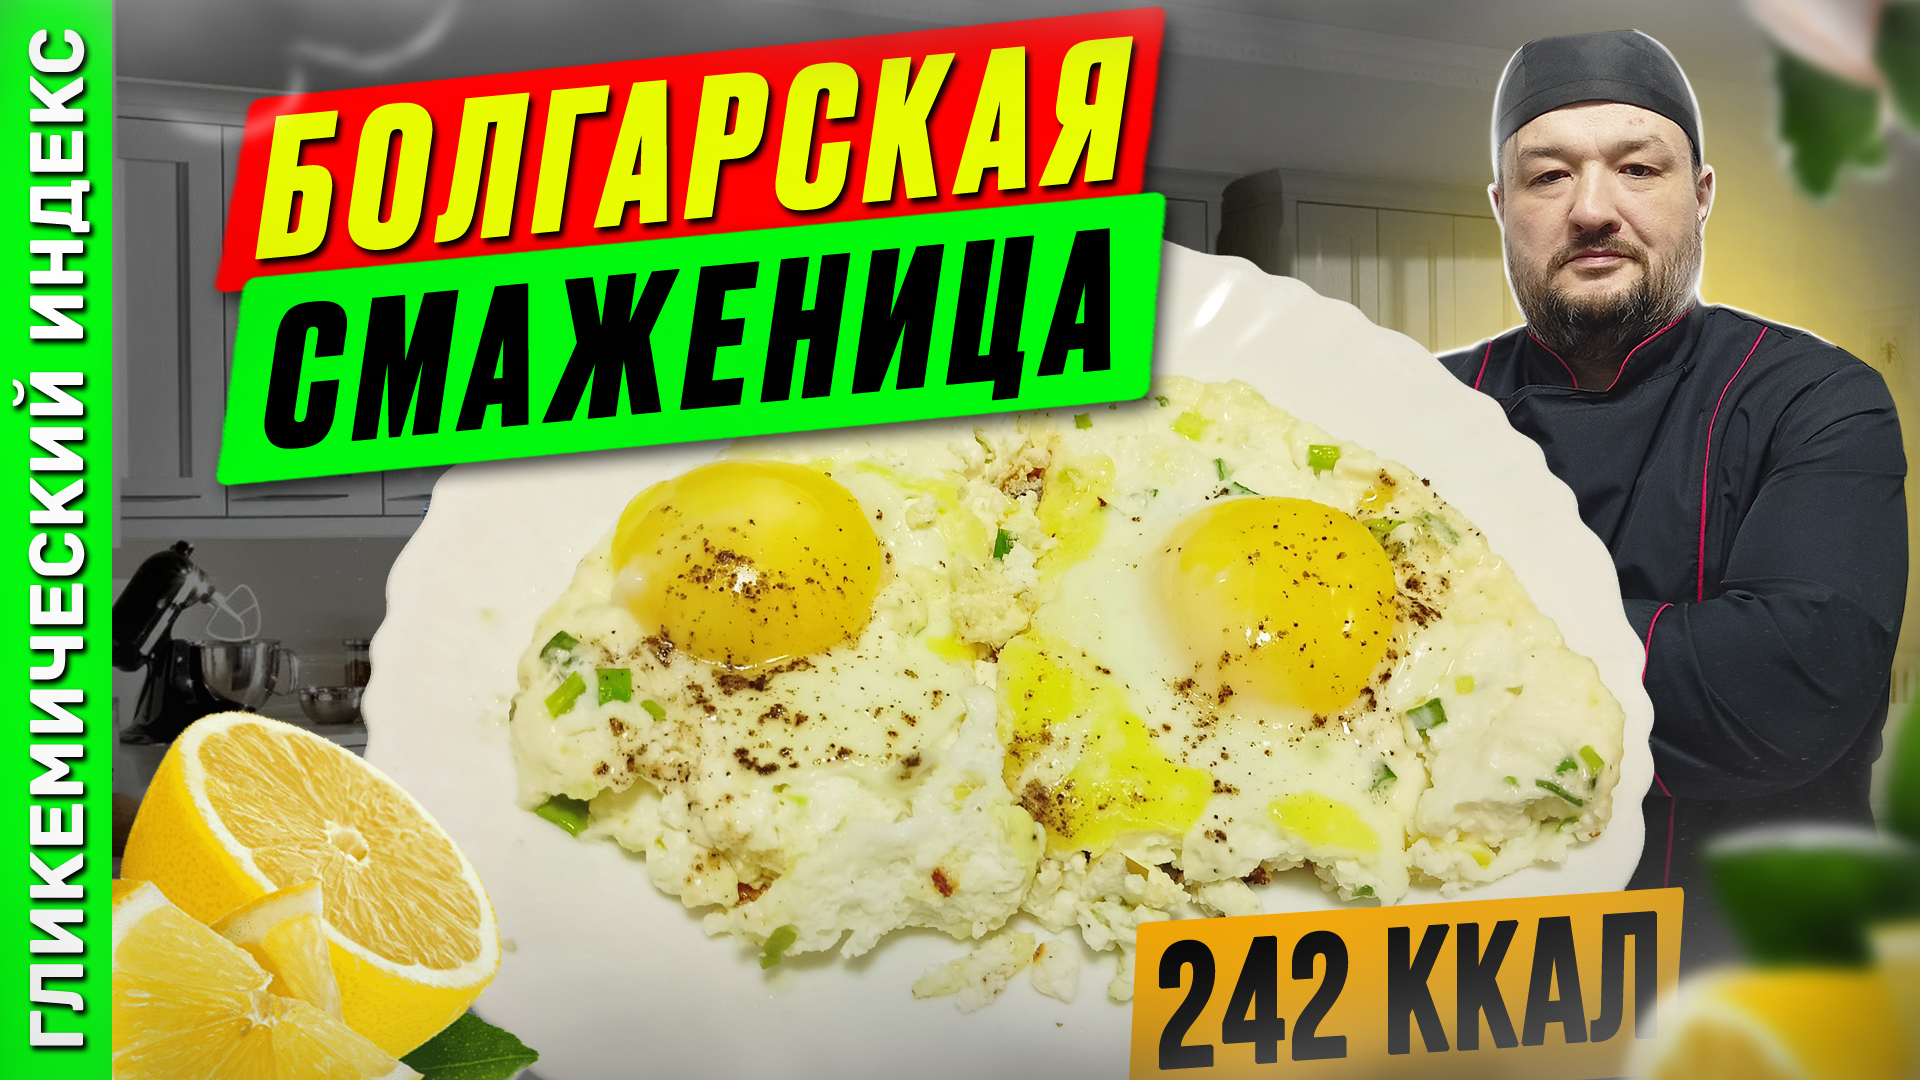 Болгарская смаженица - вкусный рецепт яичницы в мультиварке